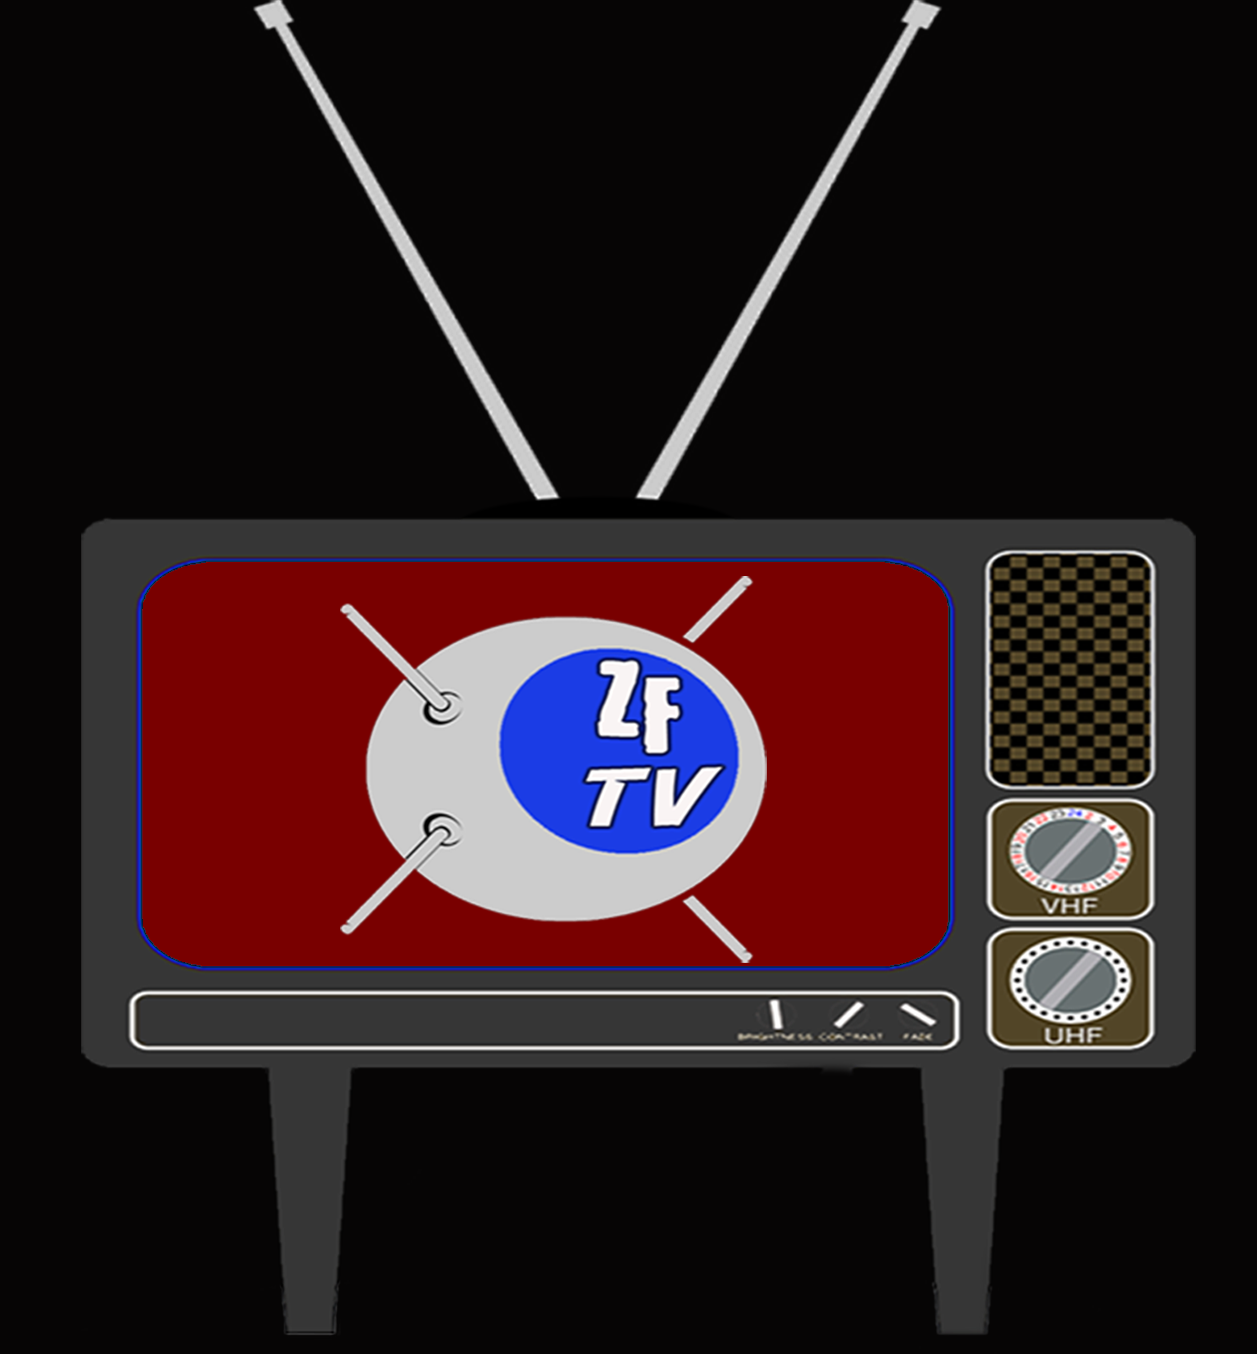 zftv old tv